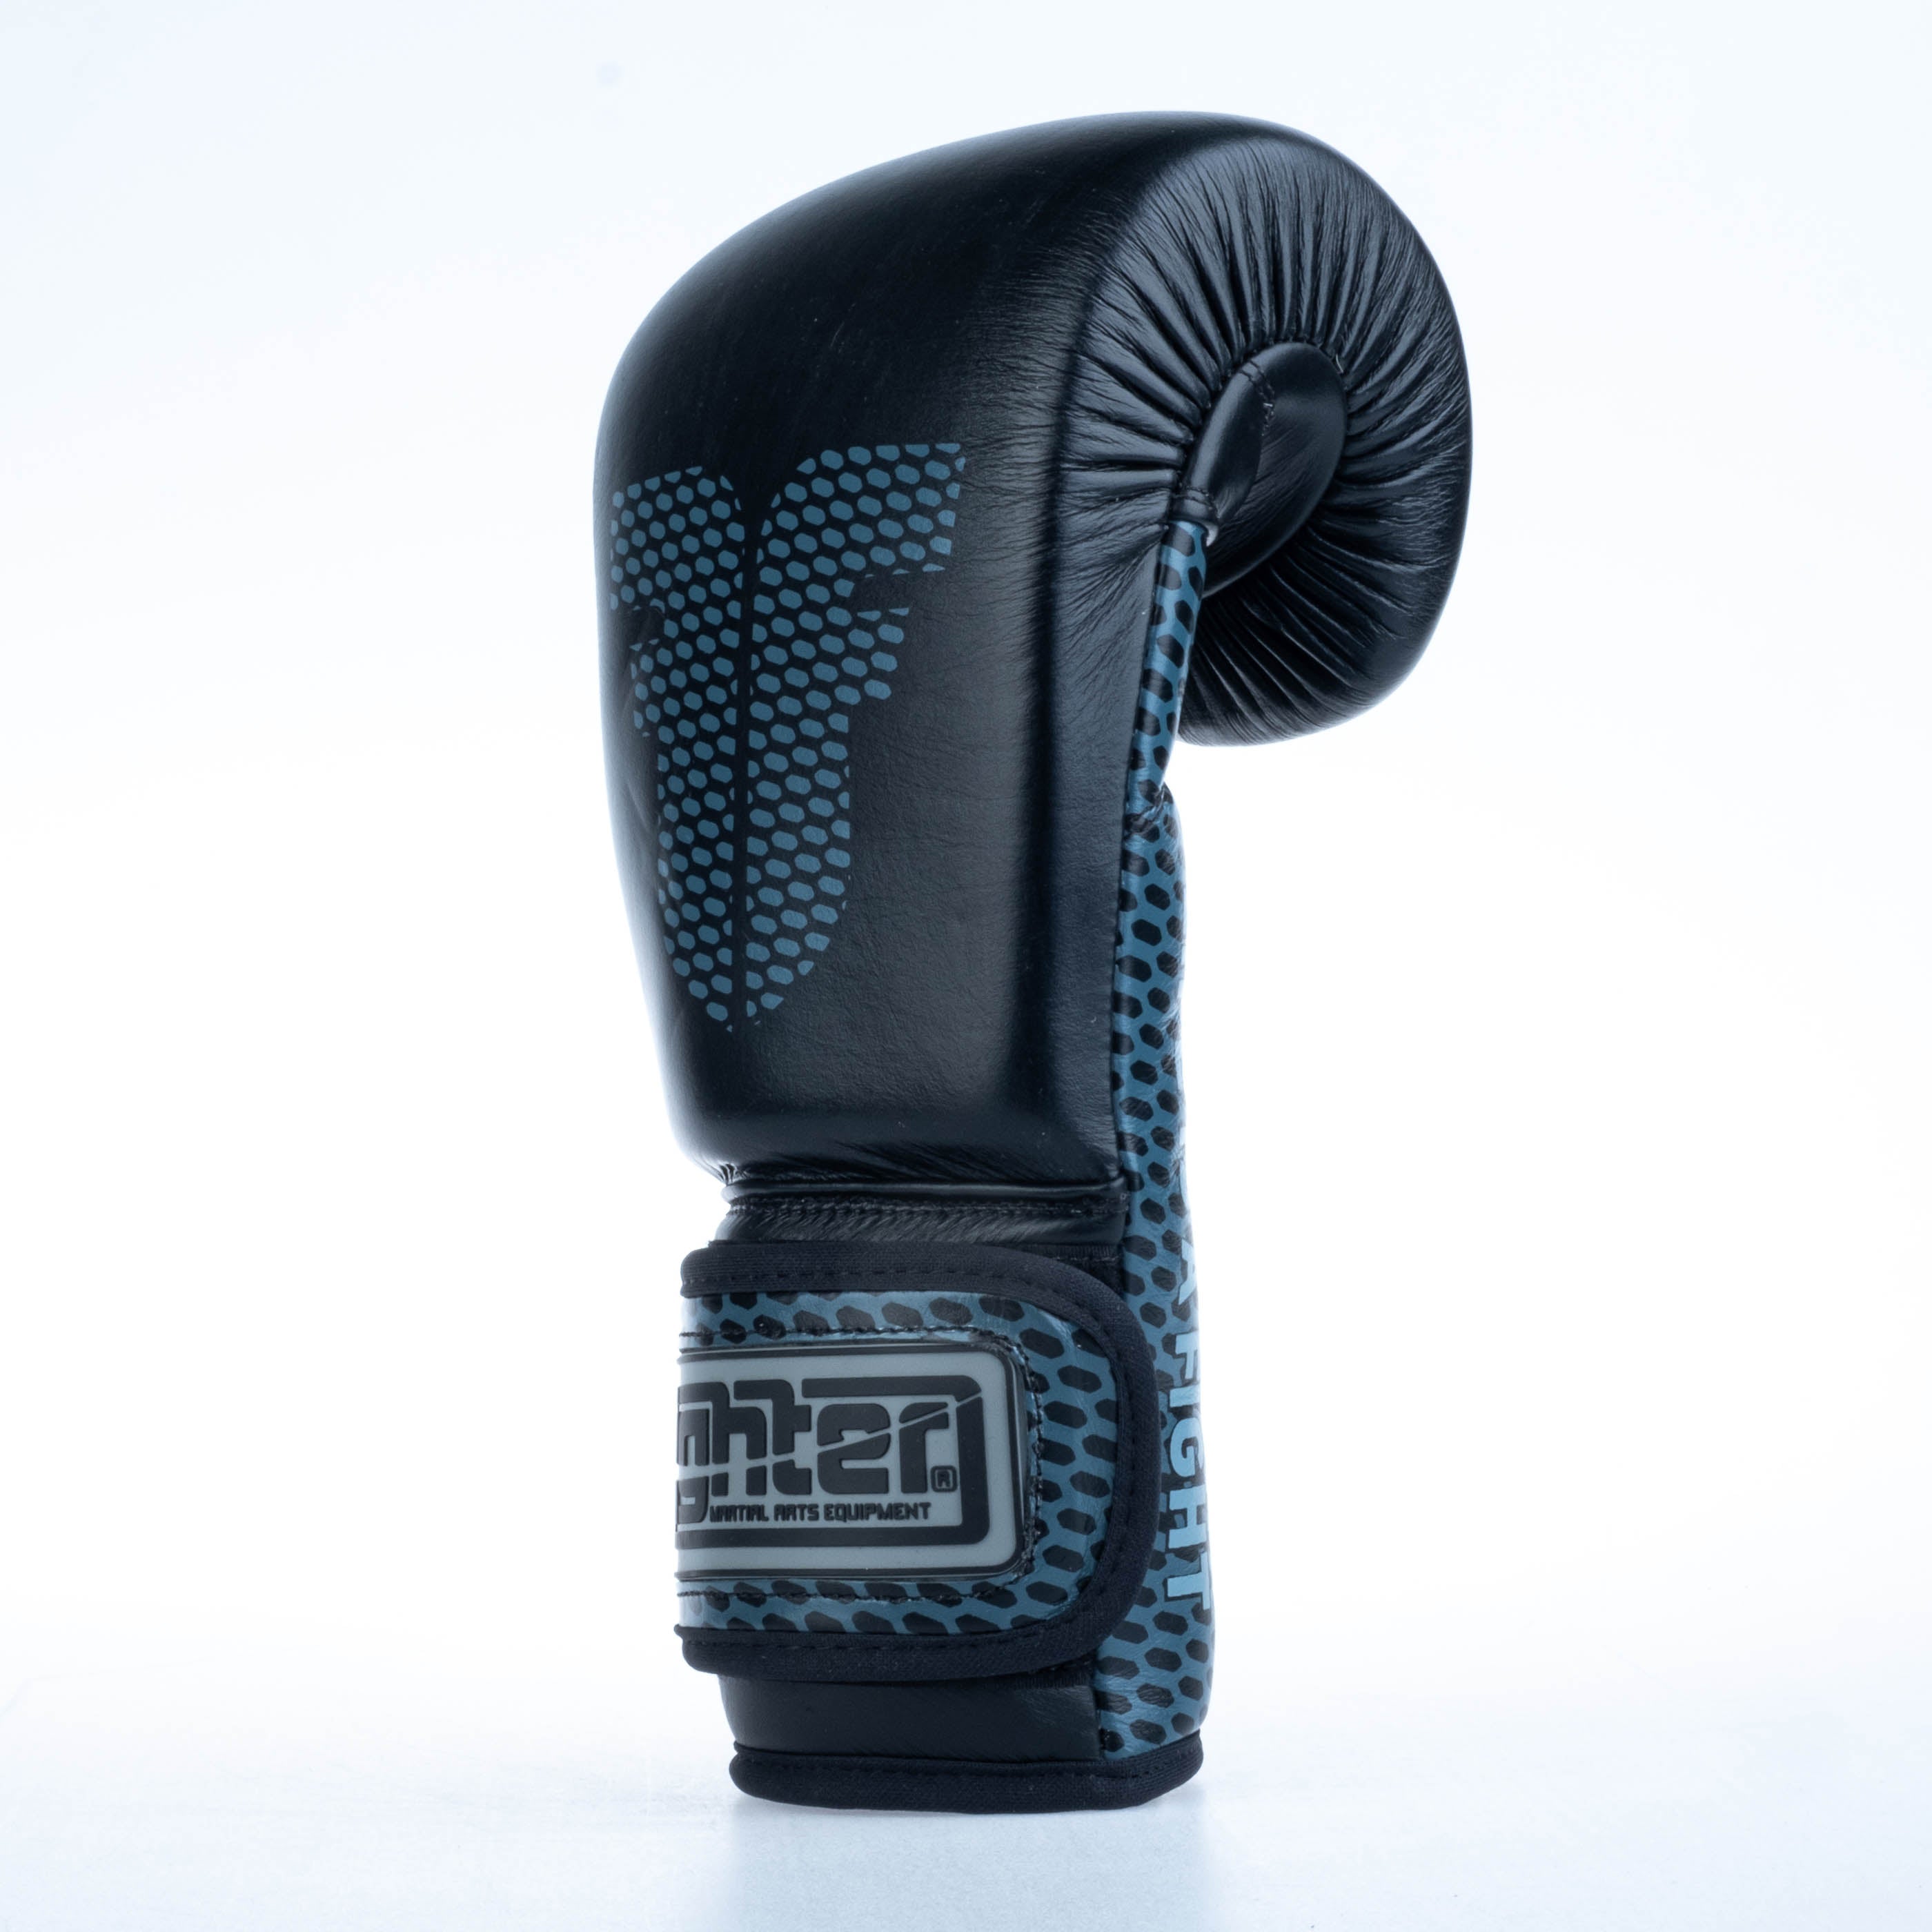 Fighter Boxing Gloves Training - black, FBG-TRN-002